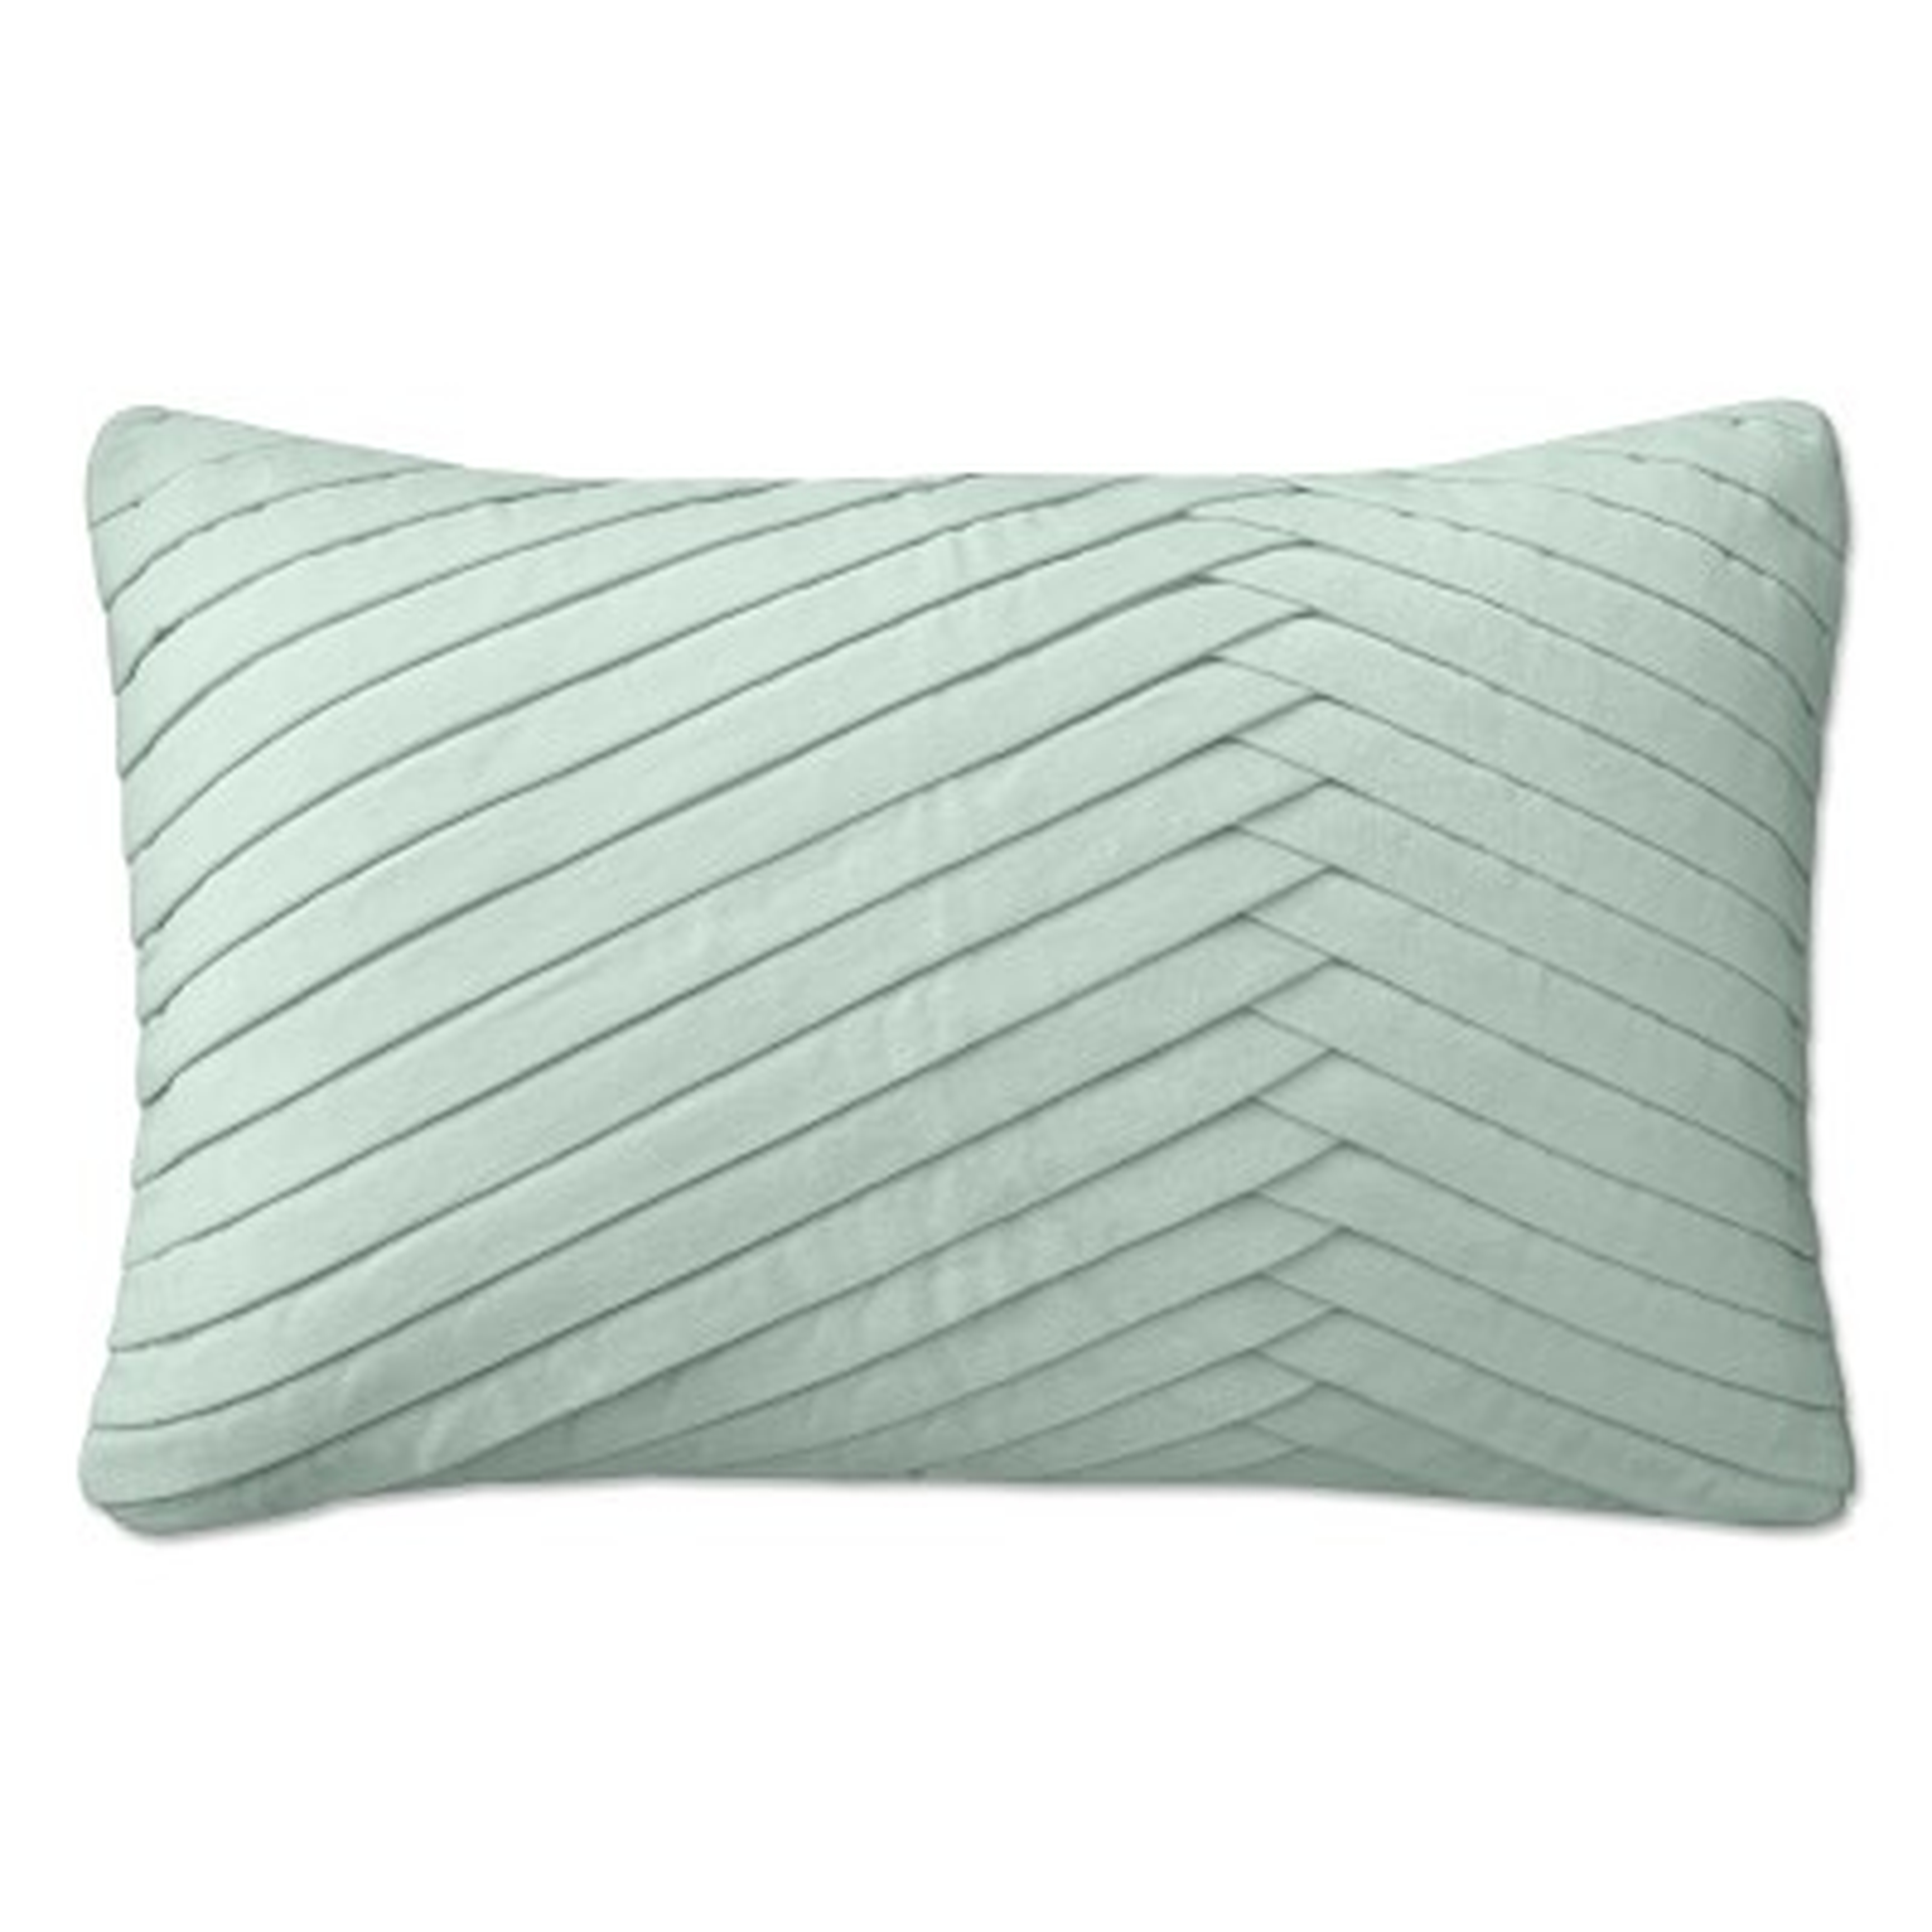 Pleated Velvet Lumbar Pillow Cover, 14" X 22", Seafoam - Williams Sonoma